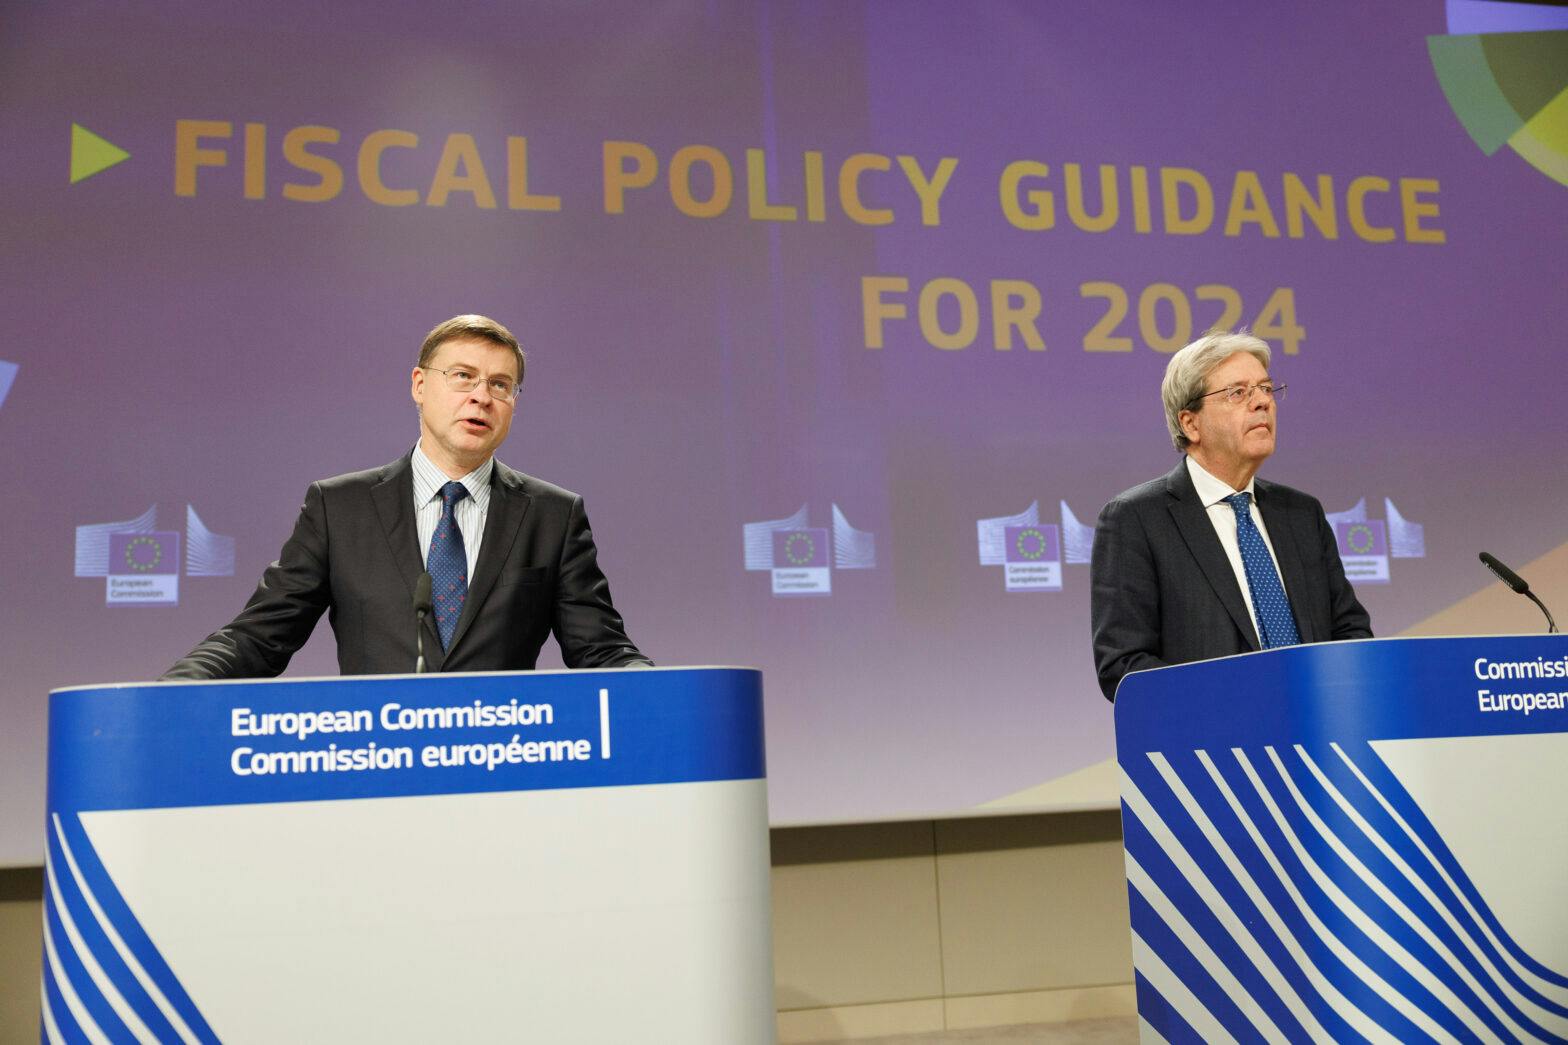 Conférence de presse de Valdis Dombrovskis, vice-président exécutif de la Commission européenne, et Paolo Gentiloni, commissaire européen, sur les orientations de politique budgétaire pour 2024